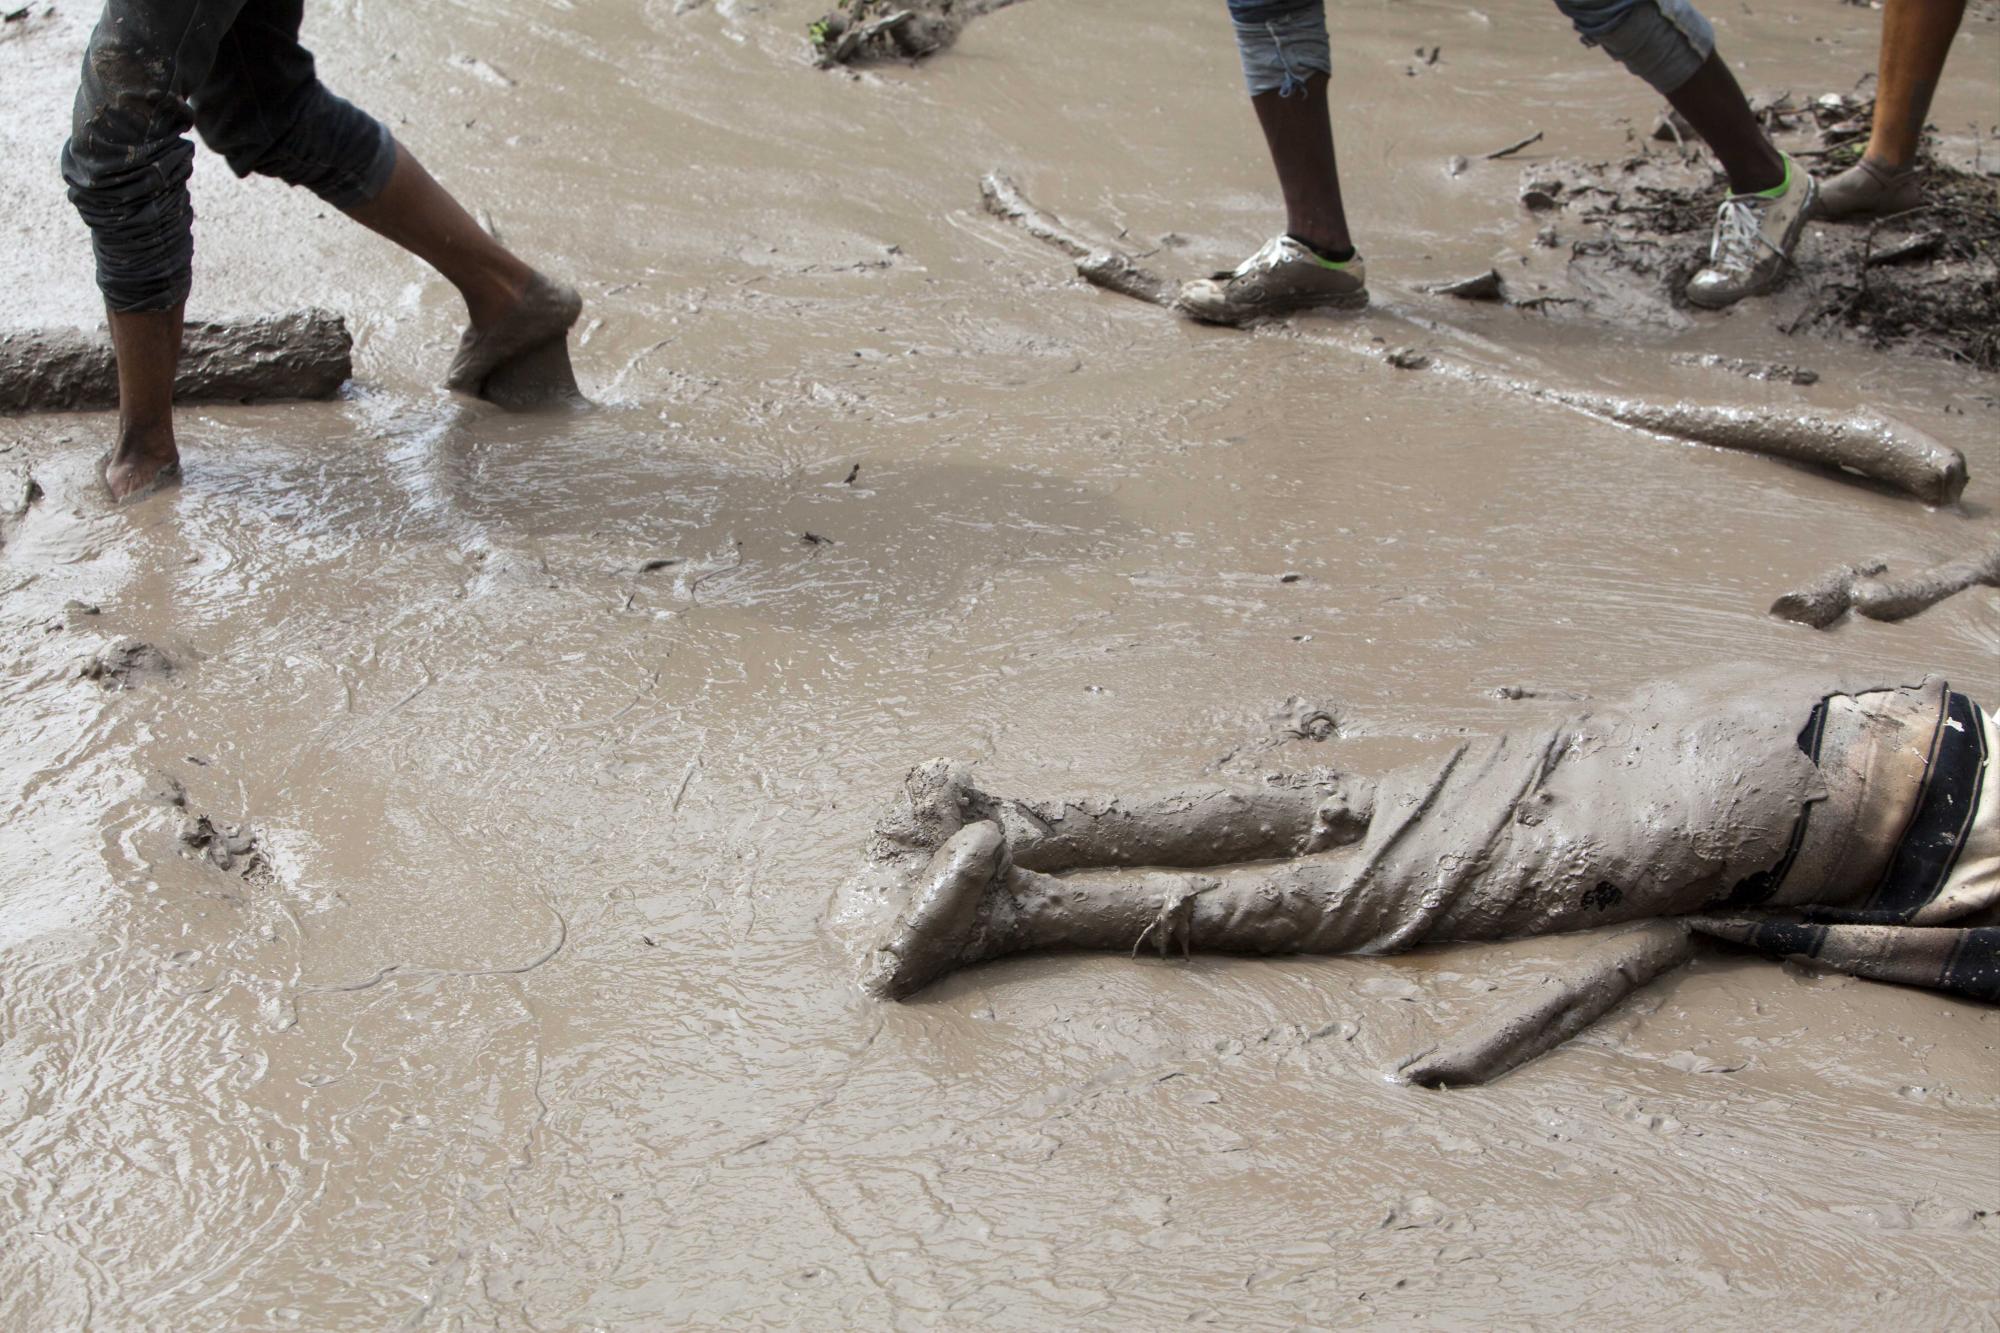 En esta imagen, tomada el 29 de agosto de 2015, el cadáver de una víctima de un deslave yace tendido al aire libre luego de que vecinos recuperaron el cuerpo semienterrado en el lodo por un deslizamiento de tierras provocado por el paso de la tormenta tropical Erika, en Montrouis, Haití. Residentes dejaron al fallecido en la calle con la esperanza de que las autoridades recuperasen el cuerpo más rápido. Erika se disipó a primera hora del sábado pero dejó un rastro de devastación a su paso por la pequeña isla caribeña de Dominica y por partes de Haití, dijeron autoridades. 